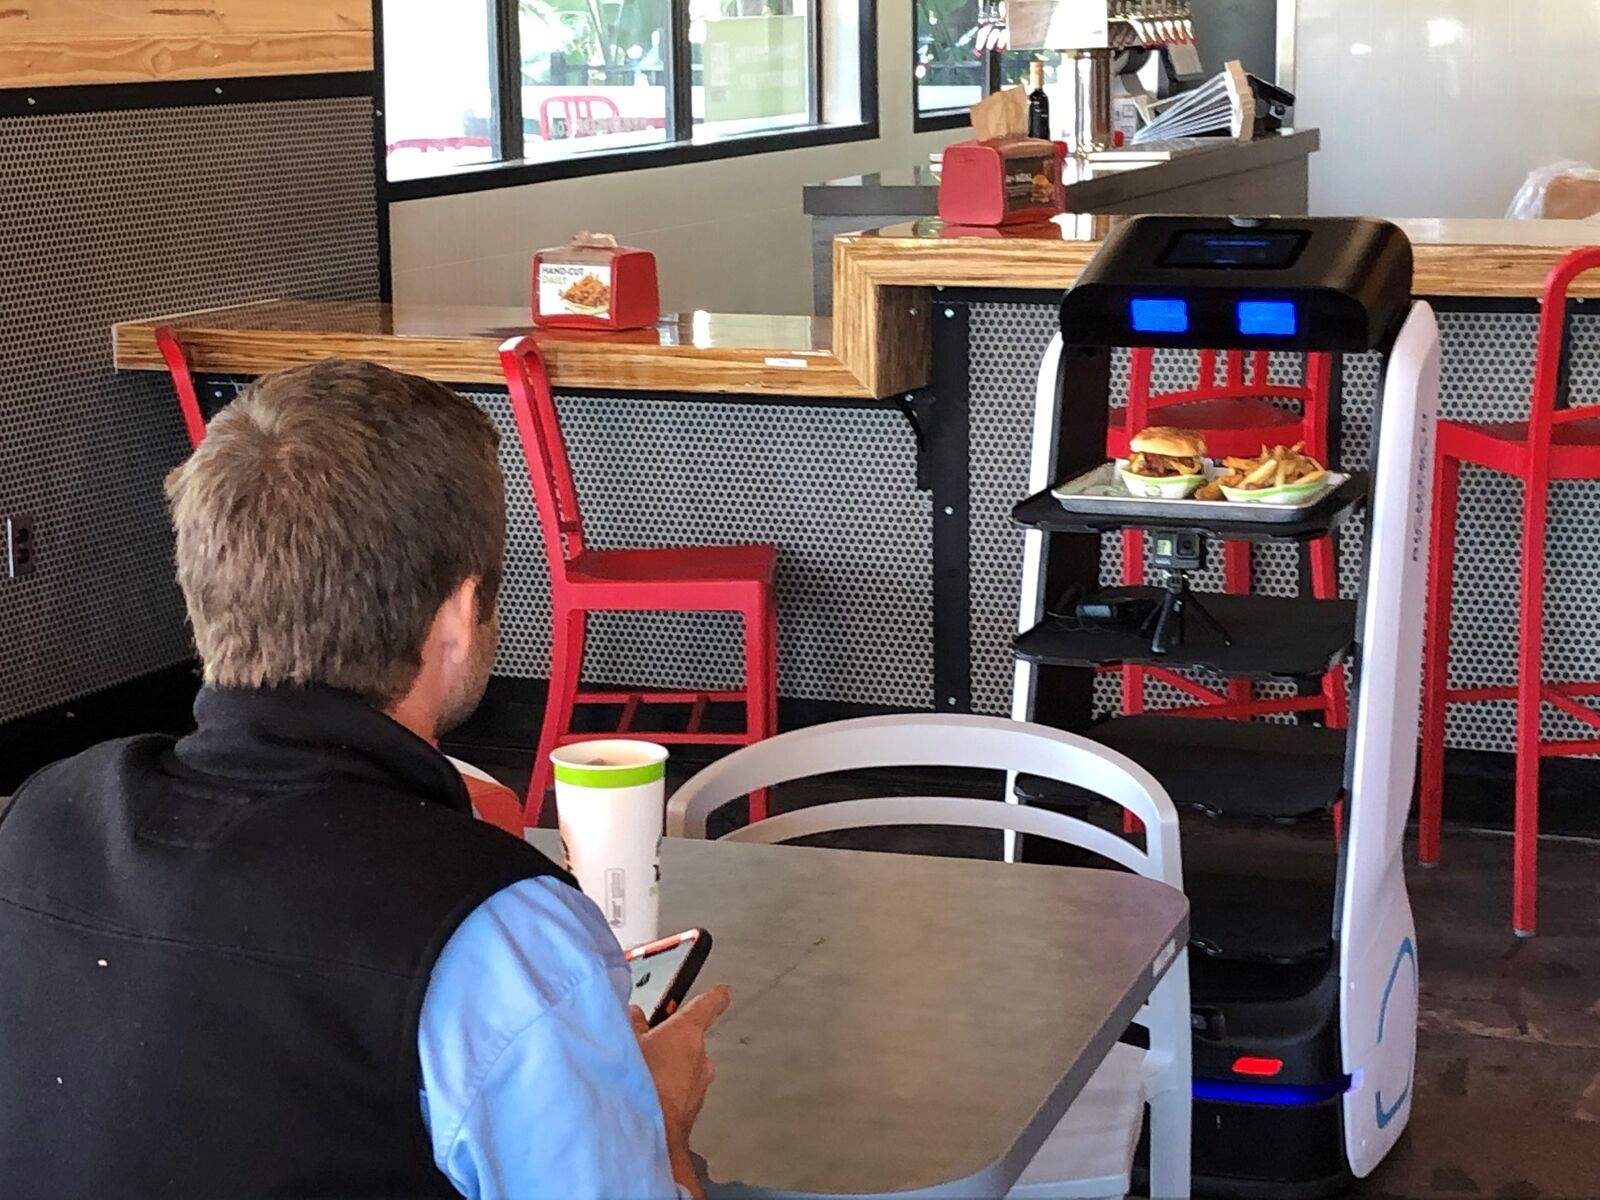 robot serving food at restaurant